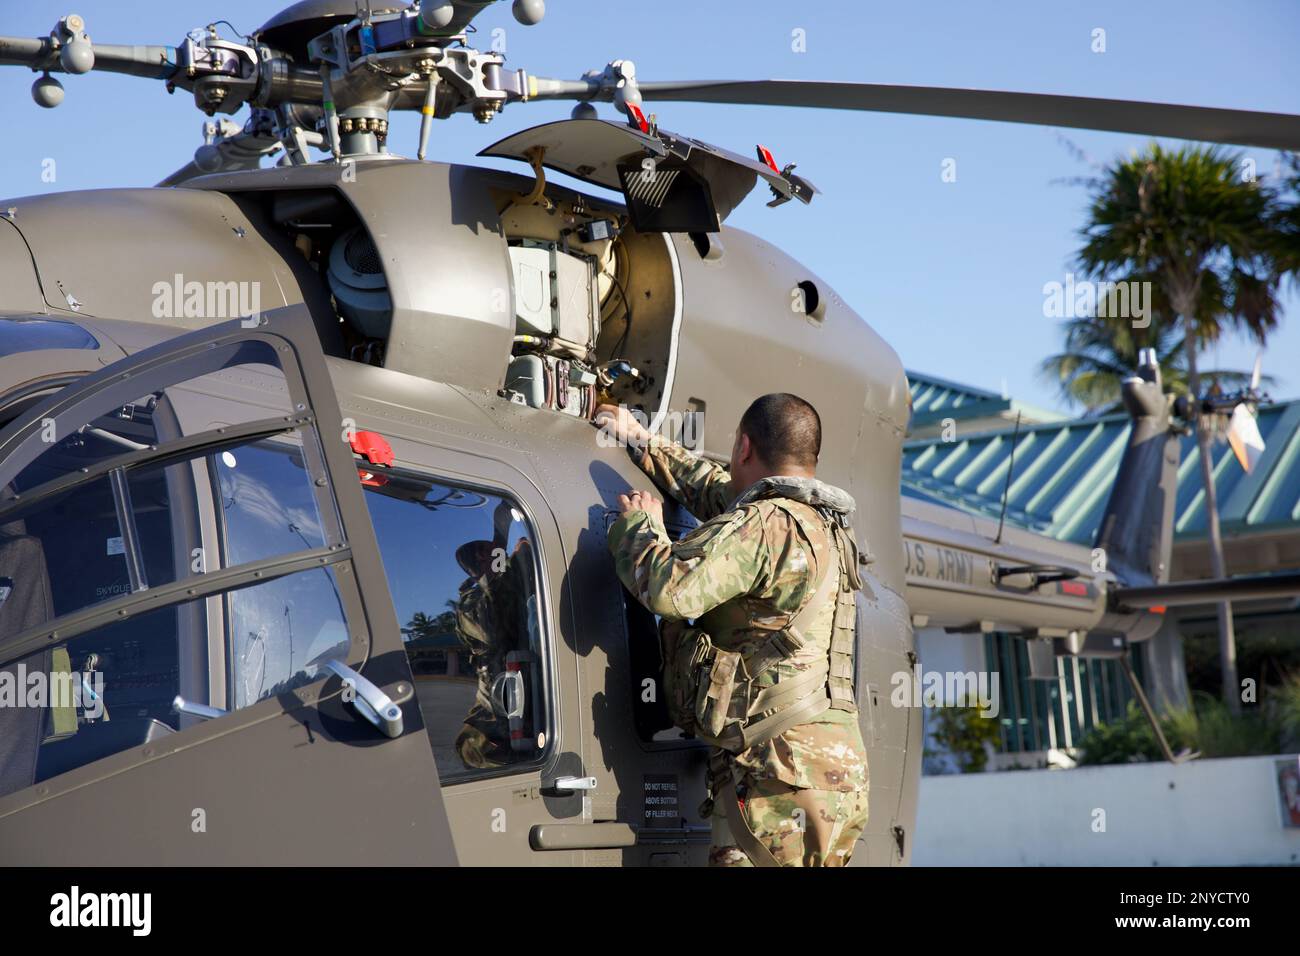 Florida Army National Guard Pilot im Kommando, Chief Warrant Officer 3 Jay Amarillo, Bravo Company, 2. Bataillon, 151. Luftfahrt-Bataillon, inspiziert einen UH-72A Lakota Helikopter vor einem abendlichen Aufklärungsflug, Marathon, F.L., 26. Januar 2023. Die Nationalgarde von Florida wurde aktiviert, um Gouverneur Ron DeSantis' kürzlich erlassene Exekutive Order 23-03 vom 6. Januar 2023 zu unterstützen, um staatliche und lokale Behörden zu unterstützen, die auf einen Zustrom von Migrantenlandungen in Südflorida reagieren. Als unterstützende Agentur hat die Florida National Guard bis zu 150 Mitarbeiter und 12 Hel aktiviert Stockfoto